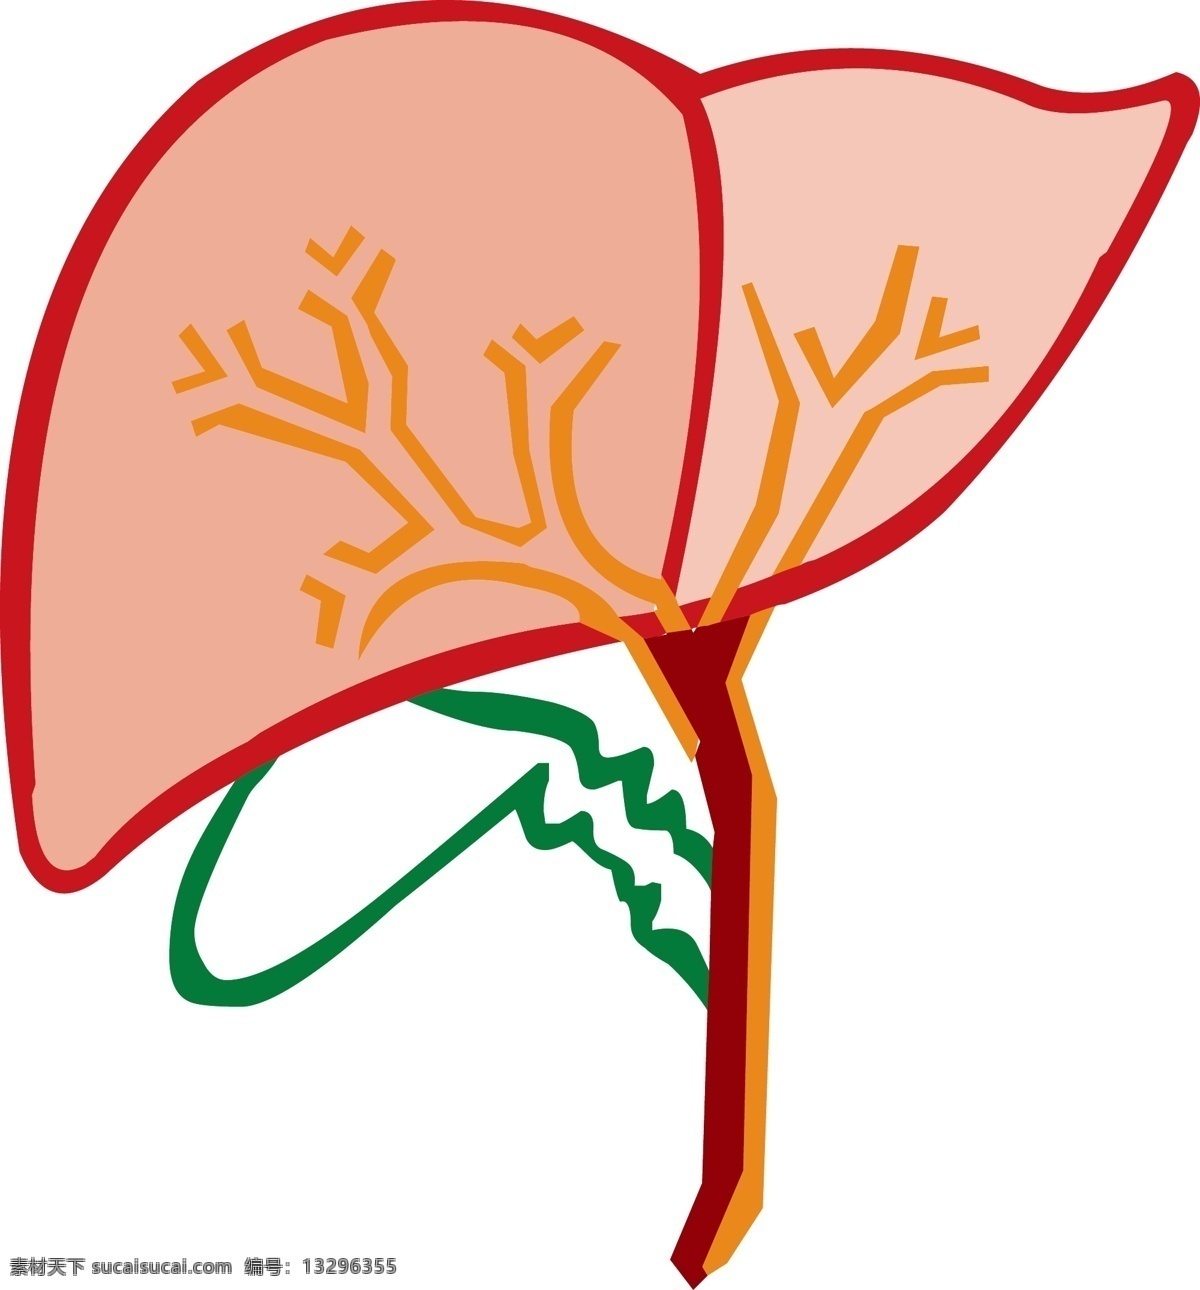 手绘 人体 器官 肝脏 线条 免 抠 简笔肝脏 肝脏结构 肝 器官结构 手绘器官 人体器官 矢量器官 器官图 五脏六腑 脏器 卡通器官